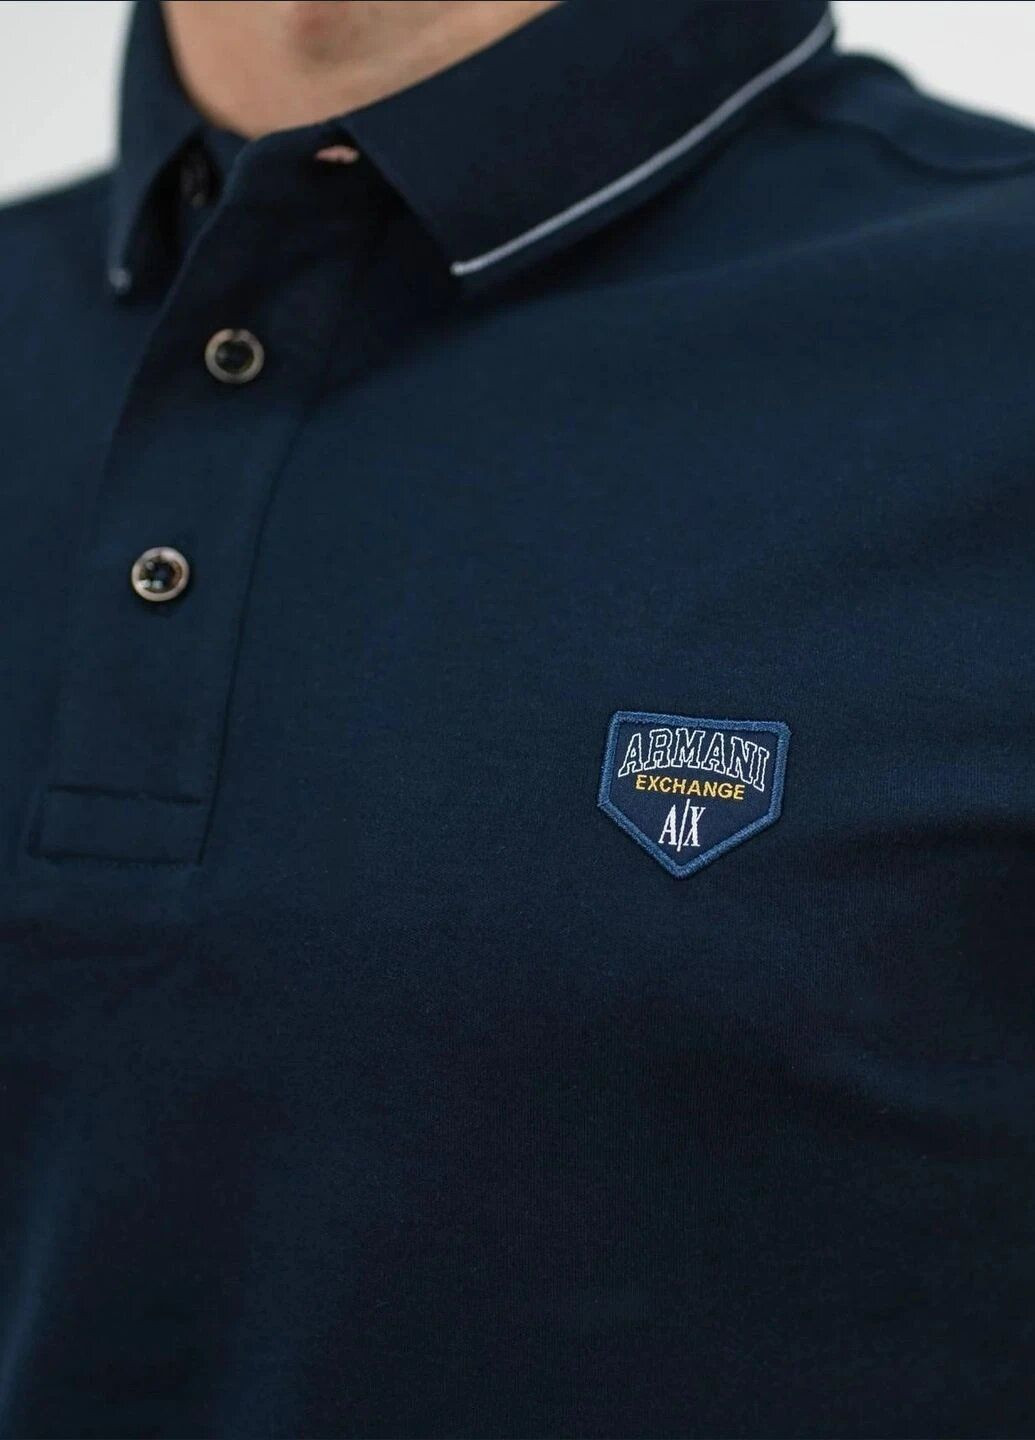 Темно-синяя футболка-поло мужское для мужчин Armani с логотипом